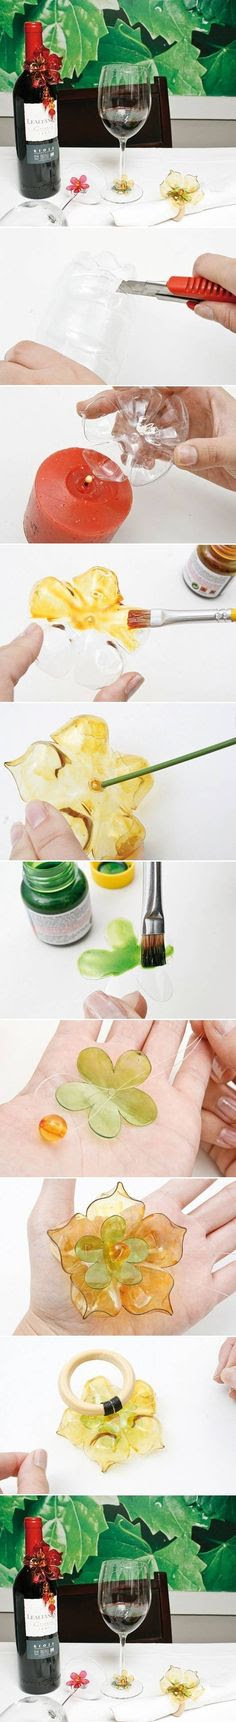 {DIY Plastic Bottle Flower